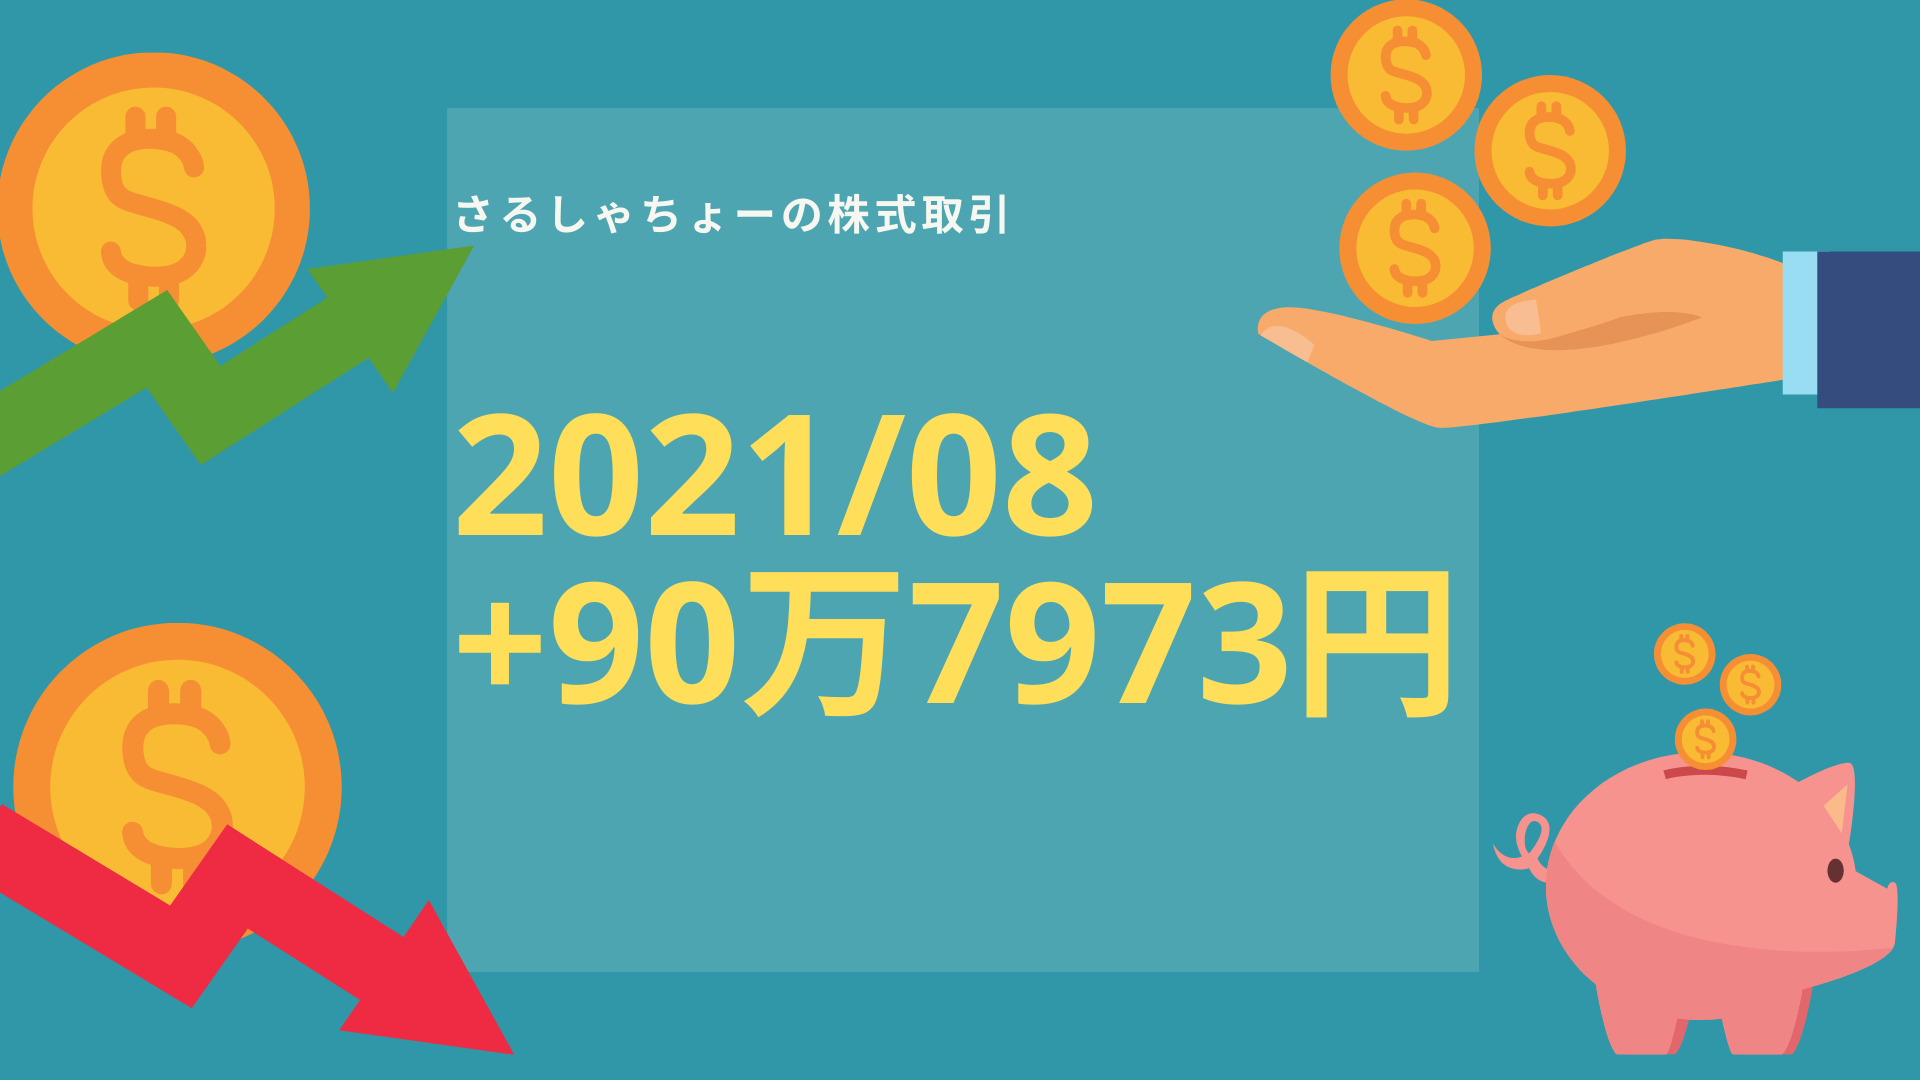 【記録】2021年08月分：+90万7973円